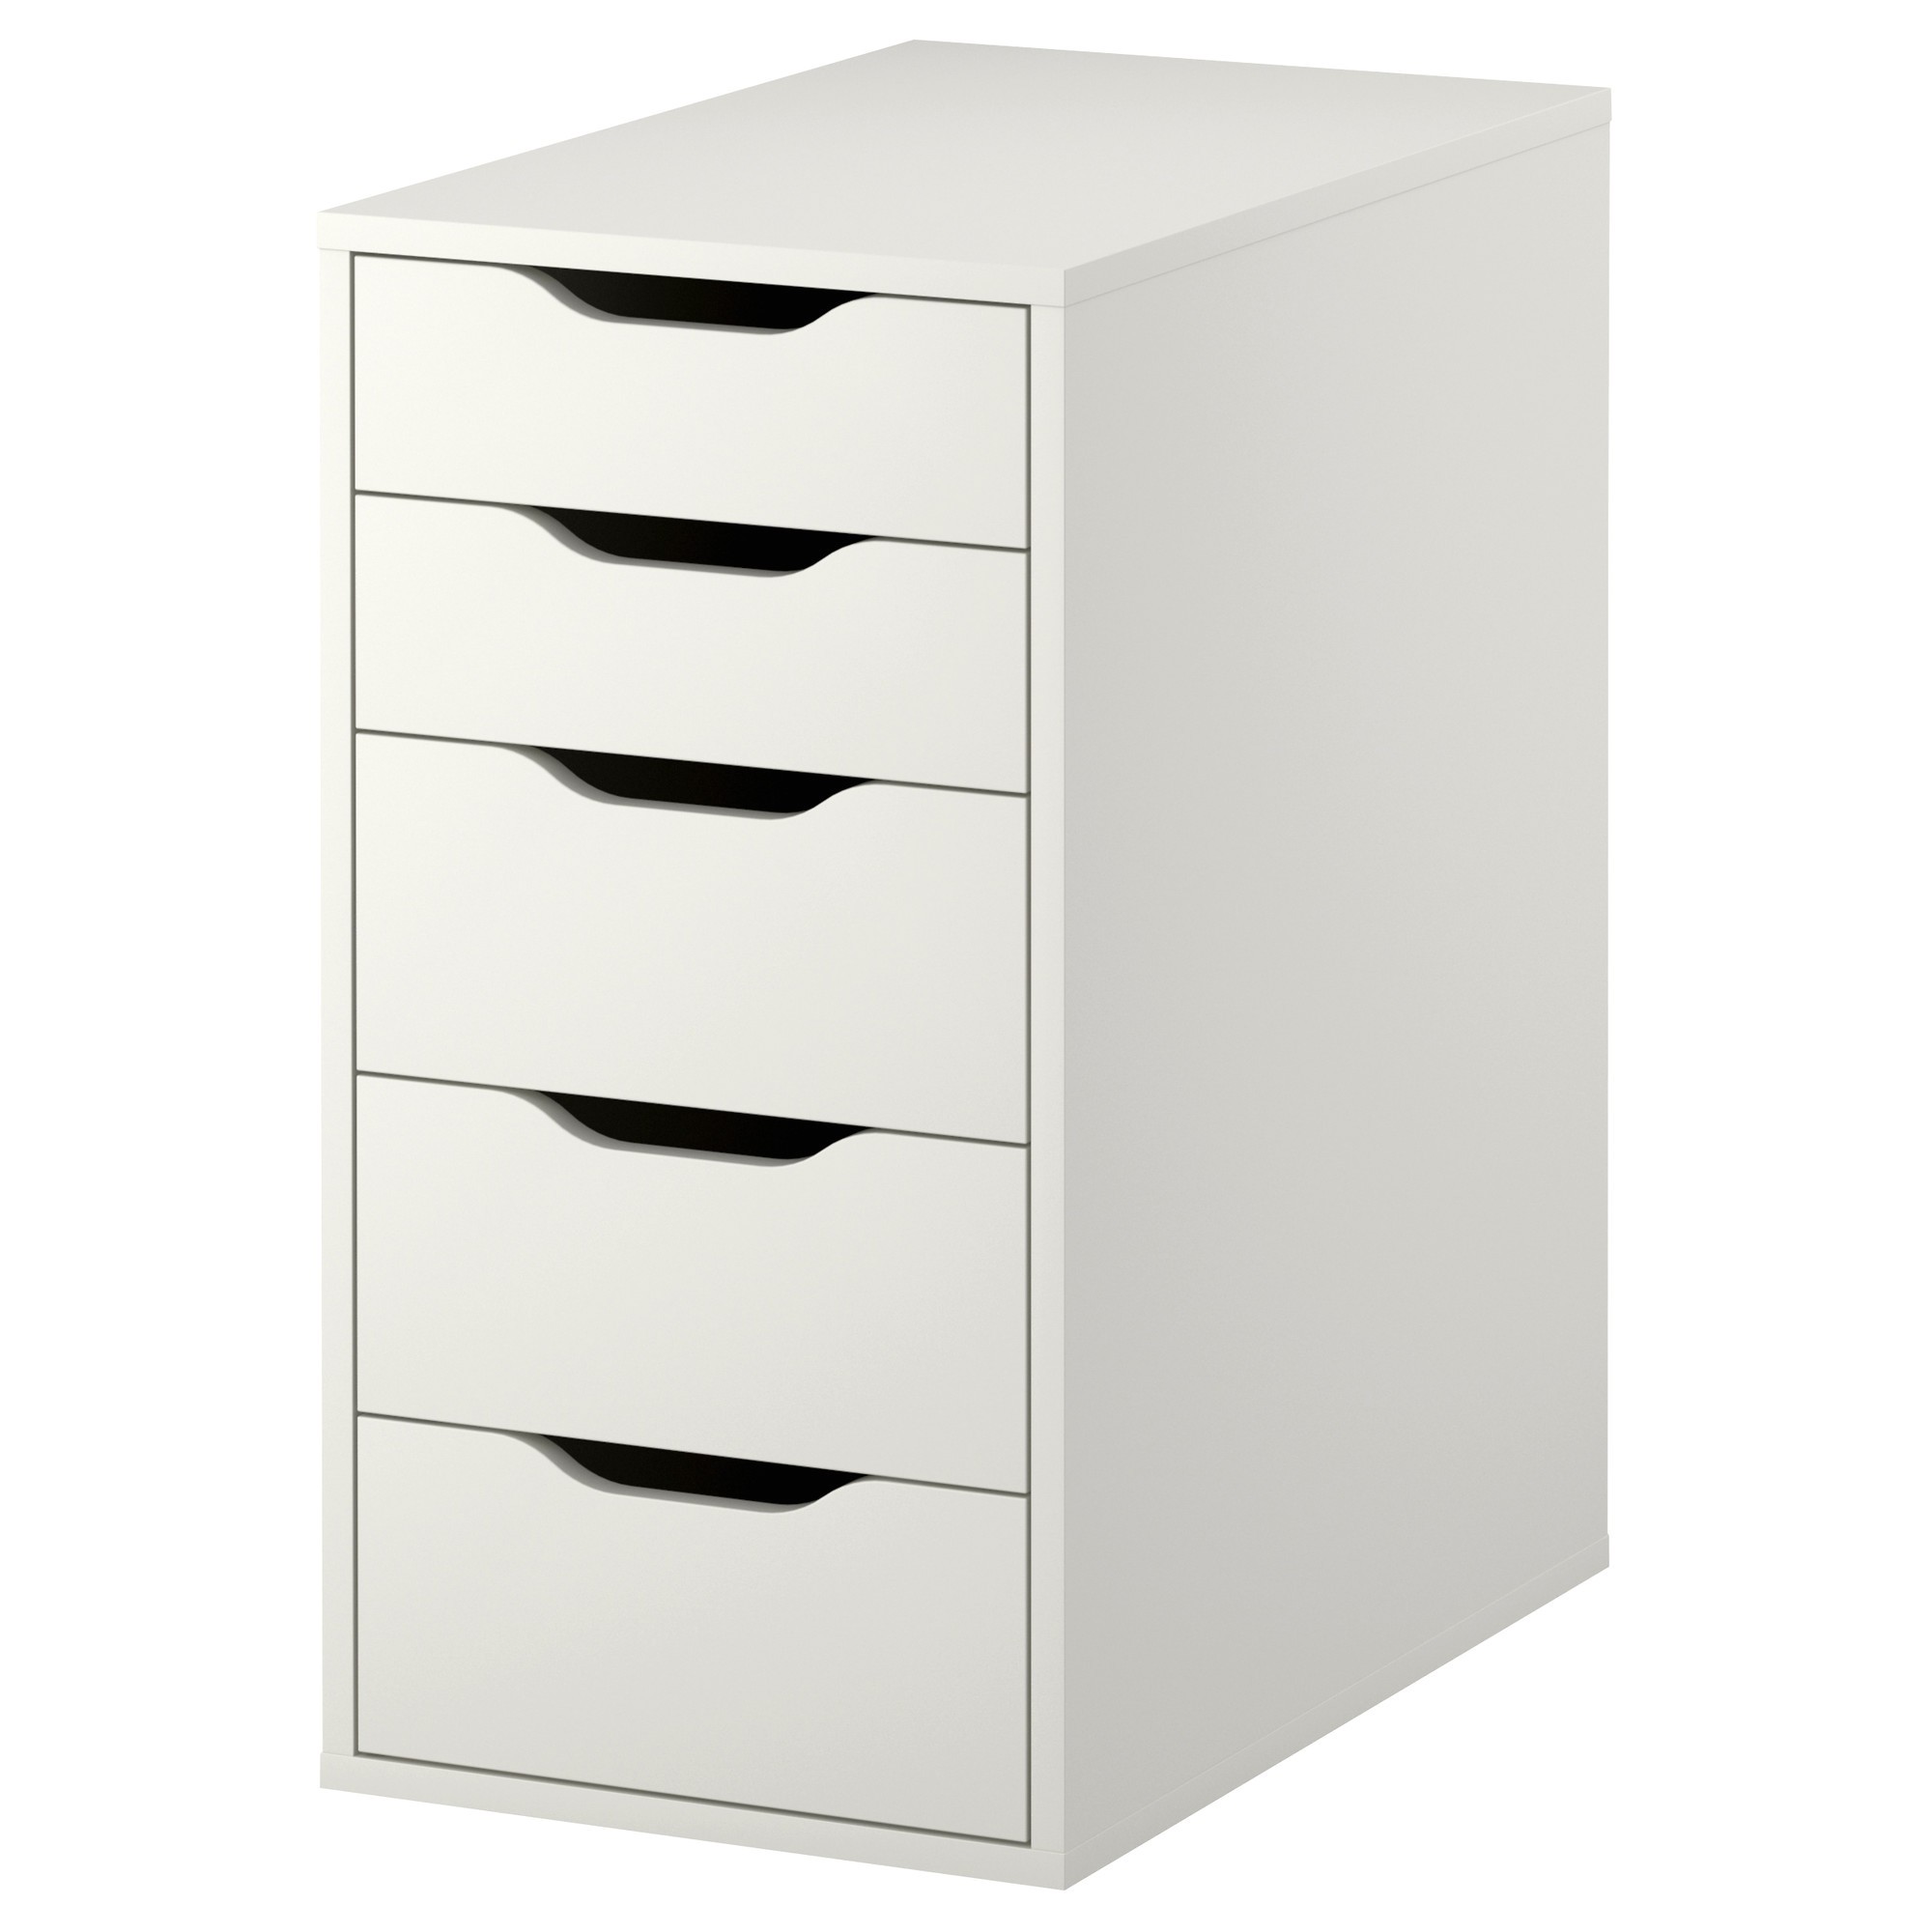 CAISSON : Meuble Rangement Bureau Ikea Meuble Rangement Bureau Beautiful  ALEX Caisson tiroirs blanc - Oussaad Négoce